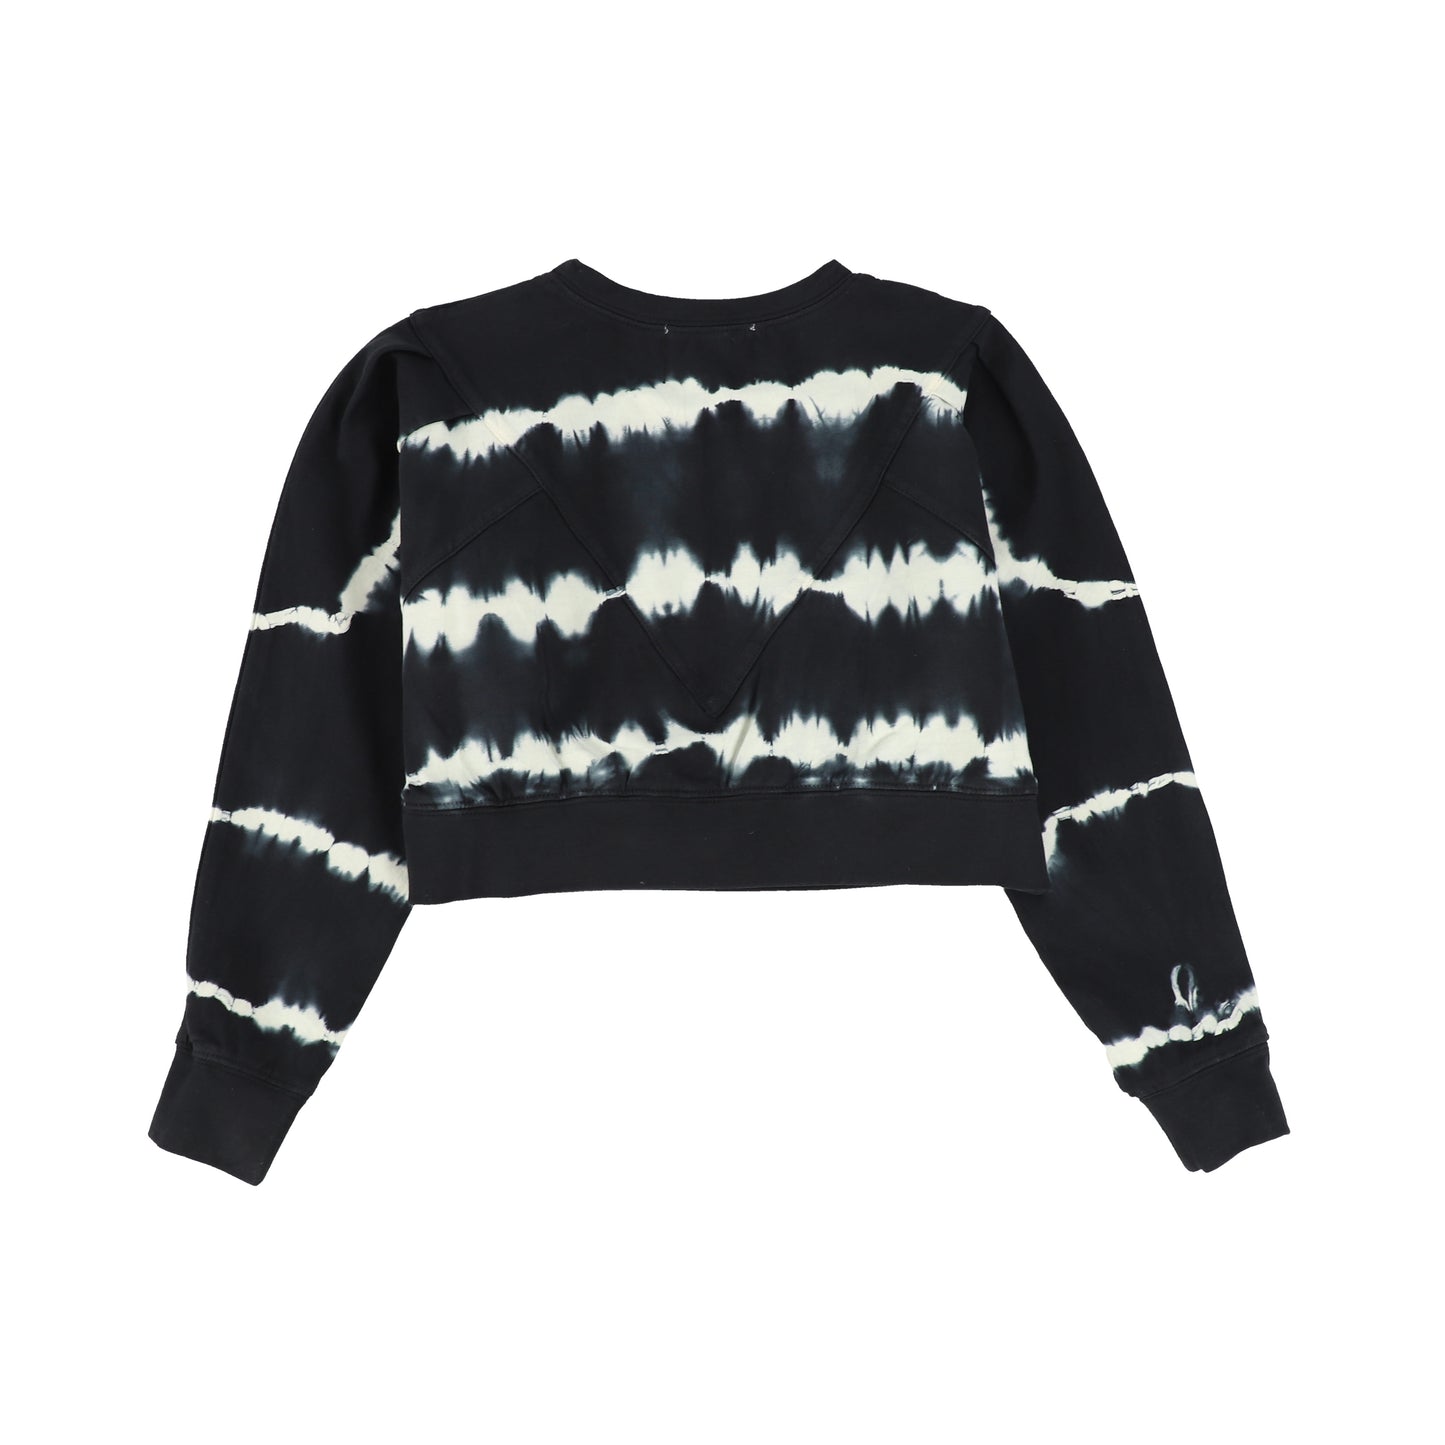 Steph The Label Black Tie Dye Oversize Sweatshirt [Final Sale]